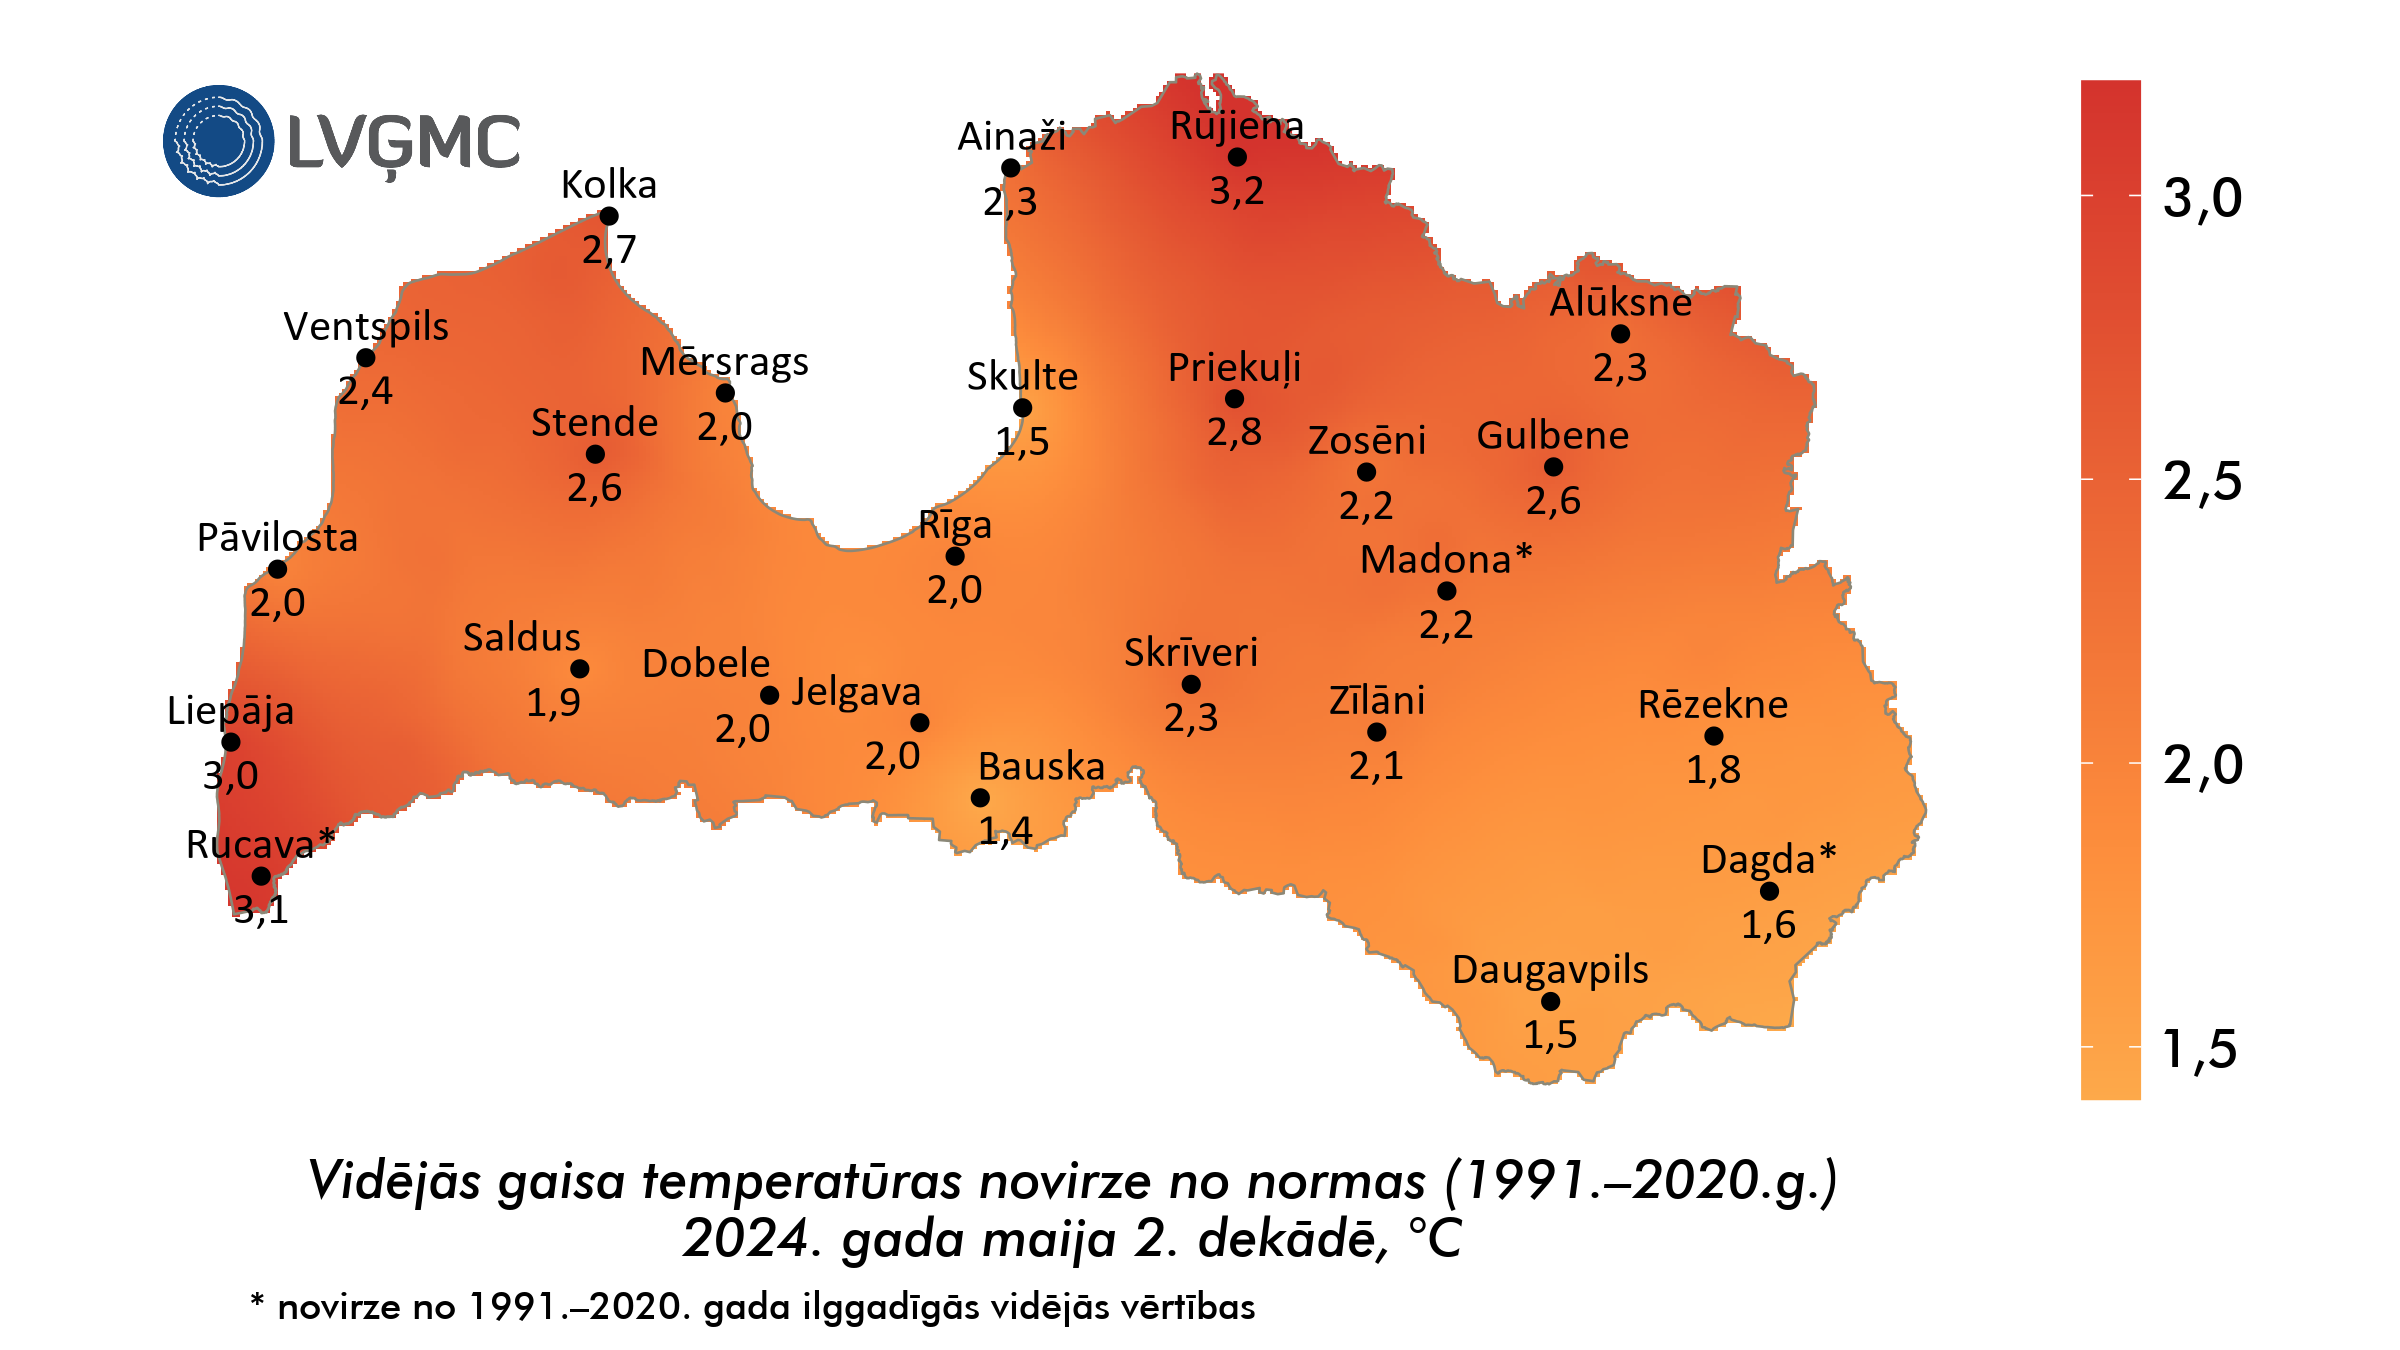 Vidējās gaisa temperatūras novirze no normas 2024. gada maija 2. dekādē, °C 